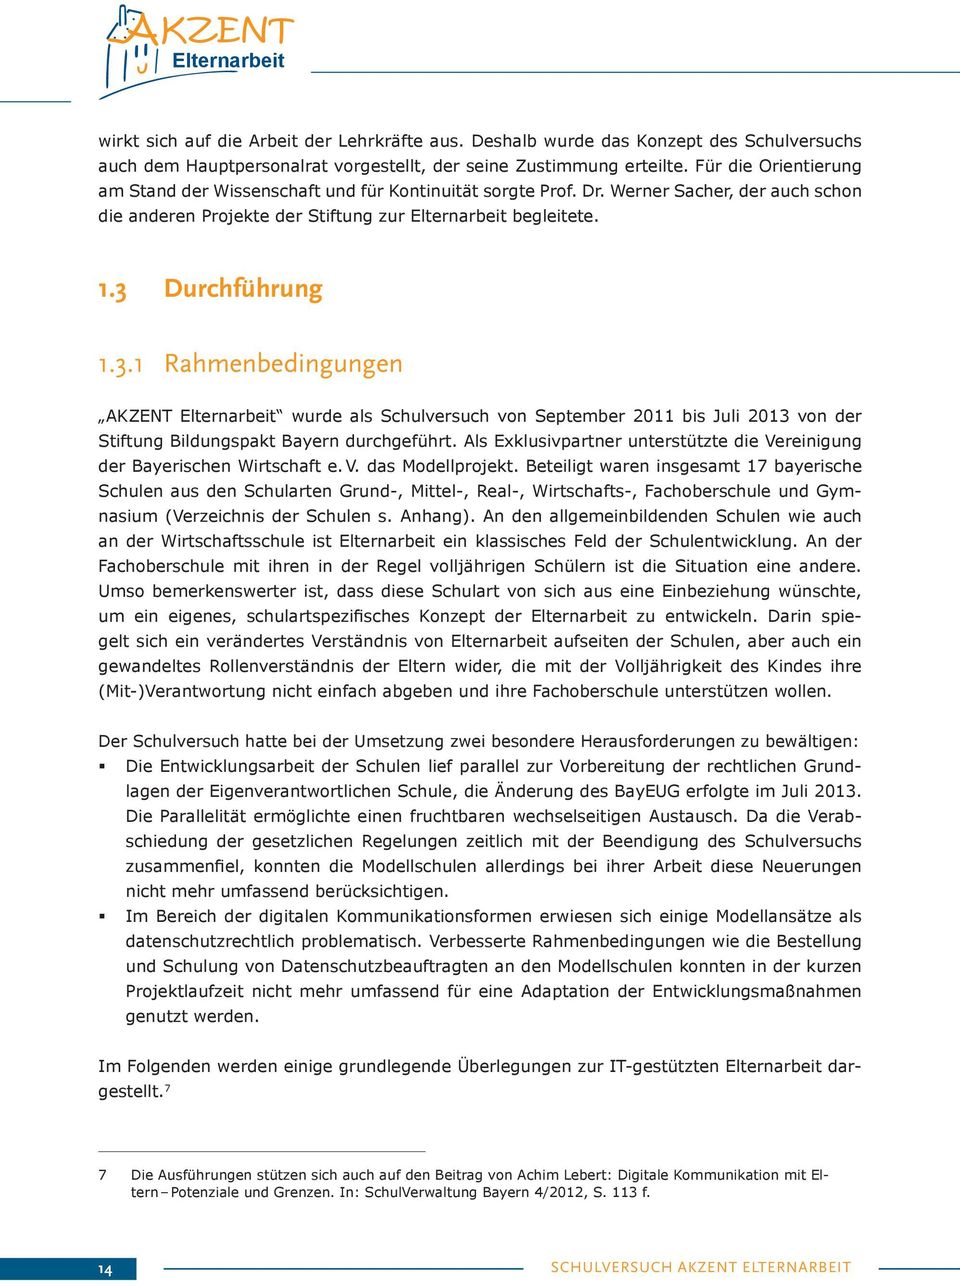 Durchführung 1.3.1 Rahmenbedingungen AKZENT wurde als Schulversuch von September 2011 bis Juli 2013 von der Stiftung Bildungspakt Bayern durchgeführt.